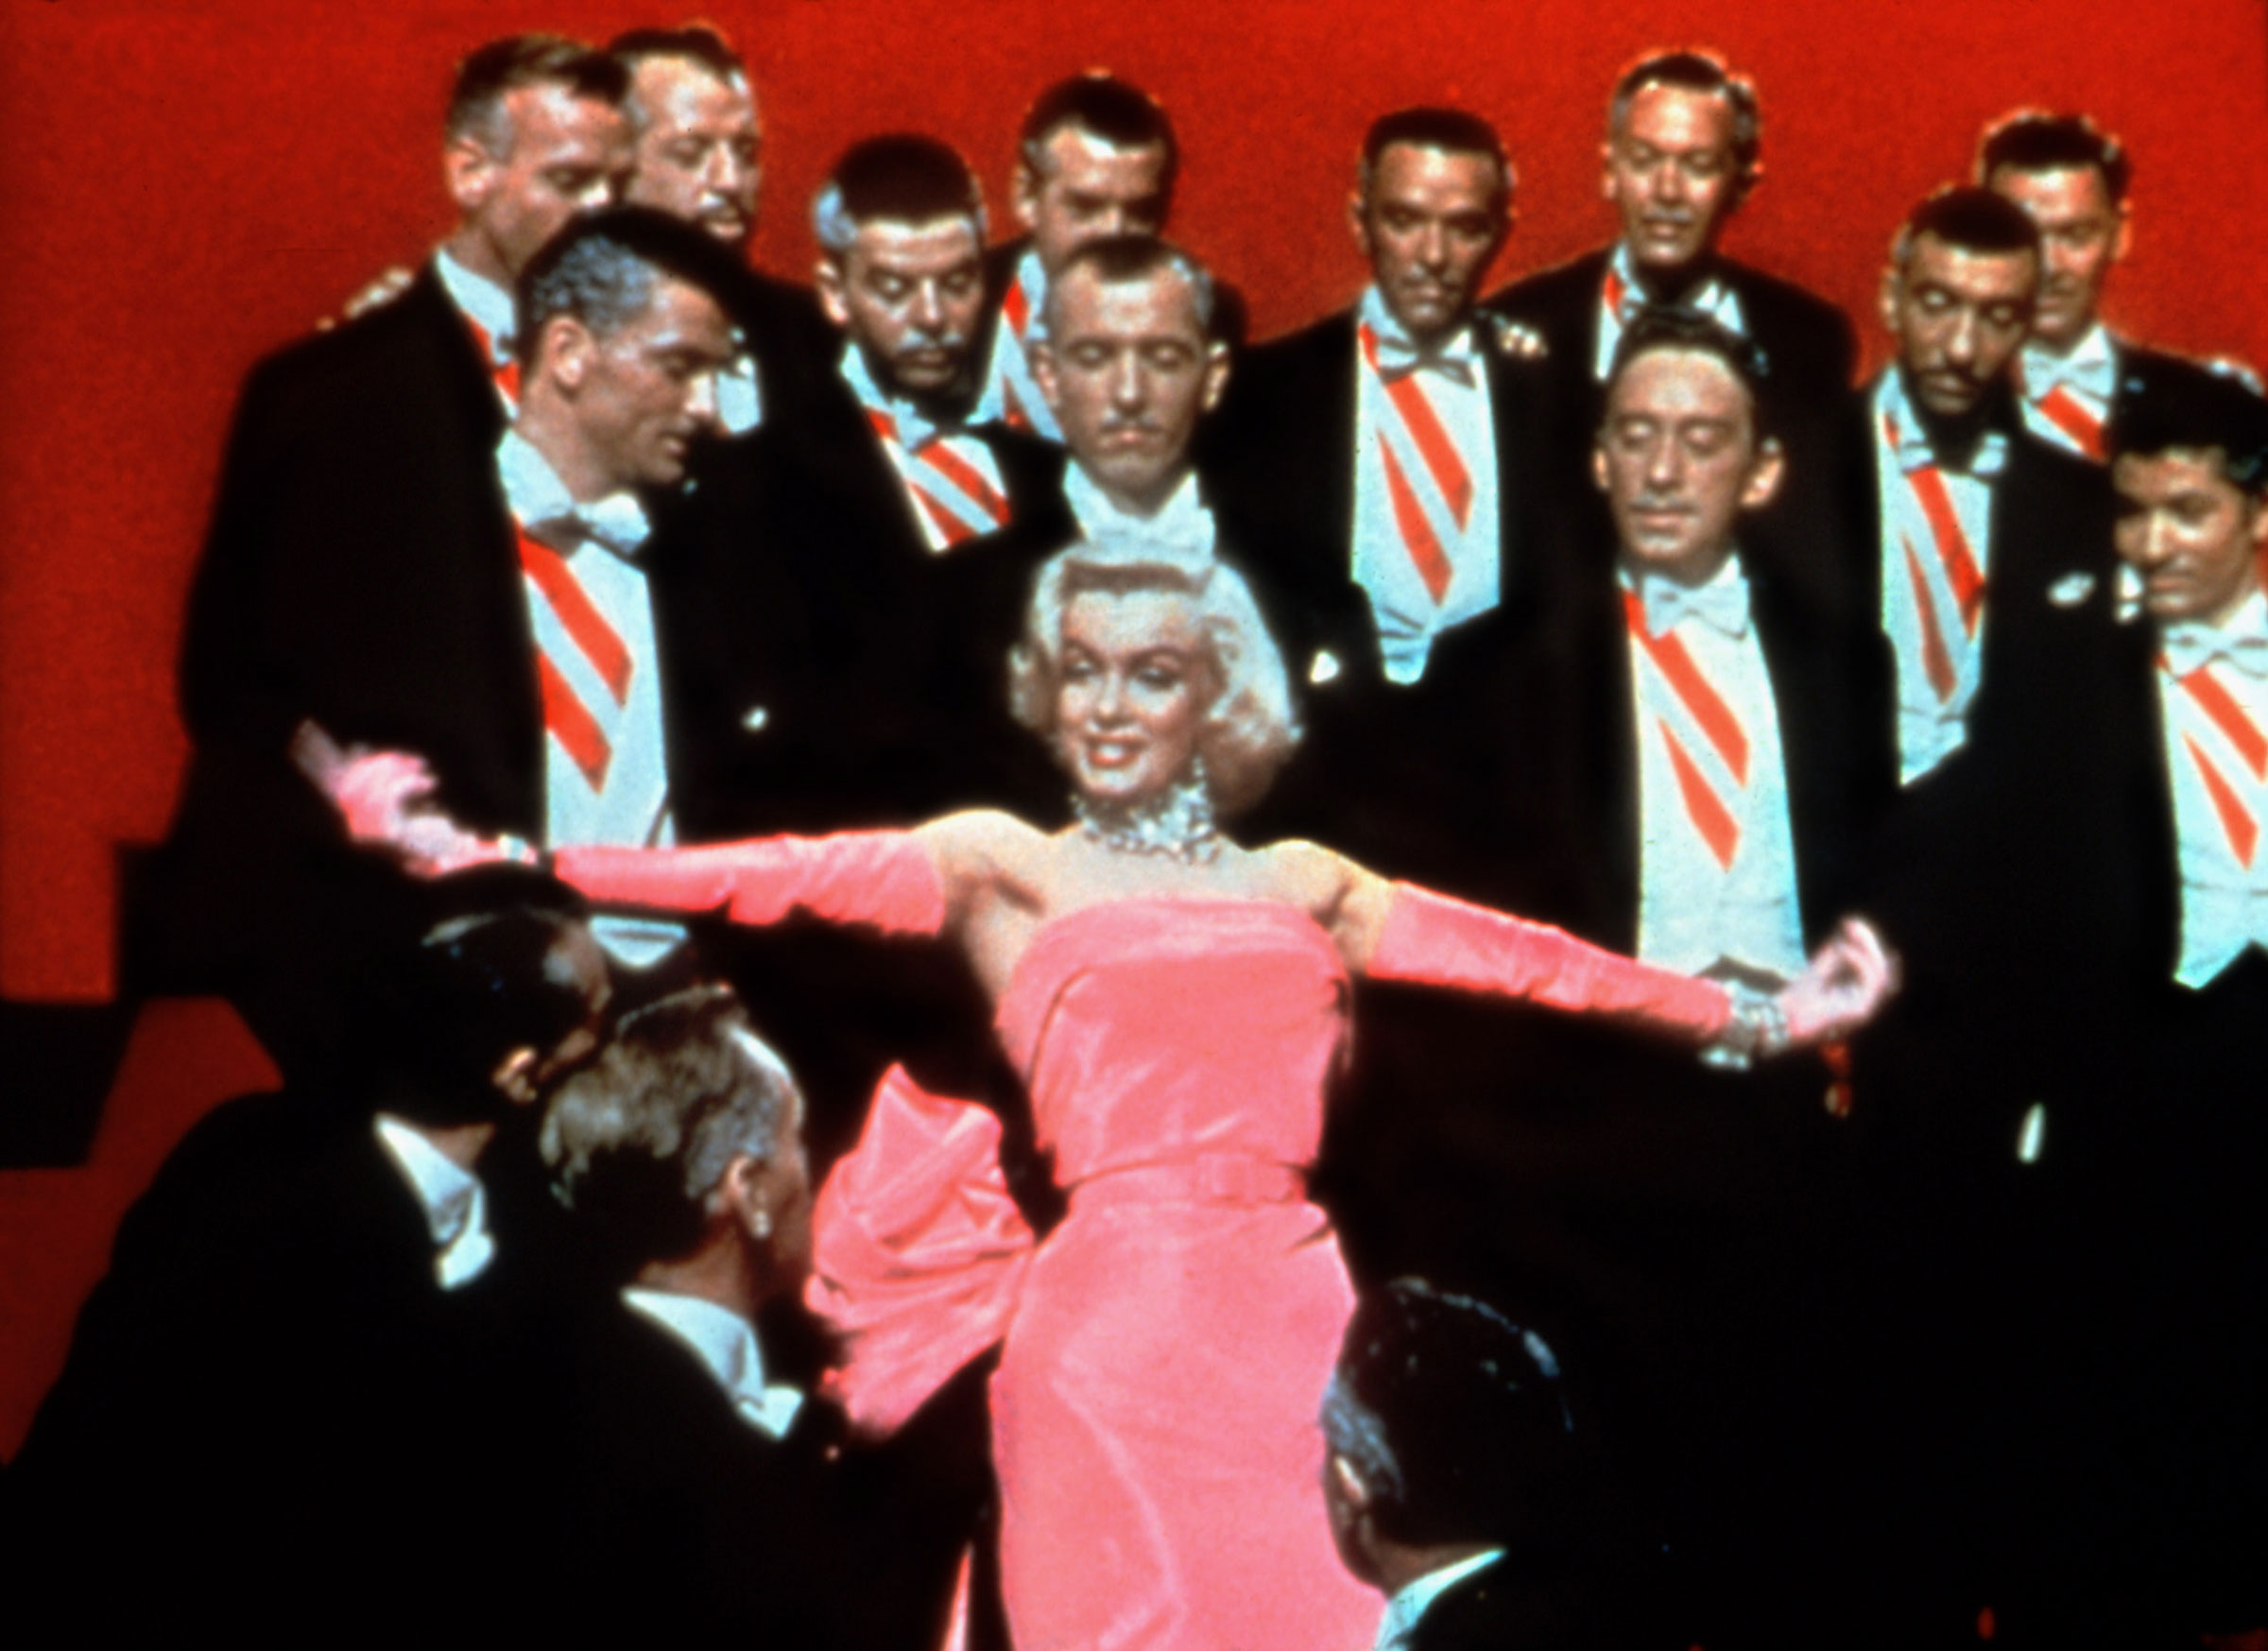 Marilyn Monroe wearing a pink dress in a still from GENTLEMEN PREFER BLONDES